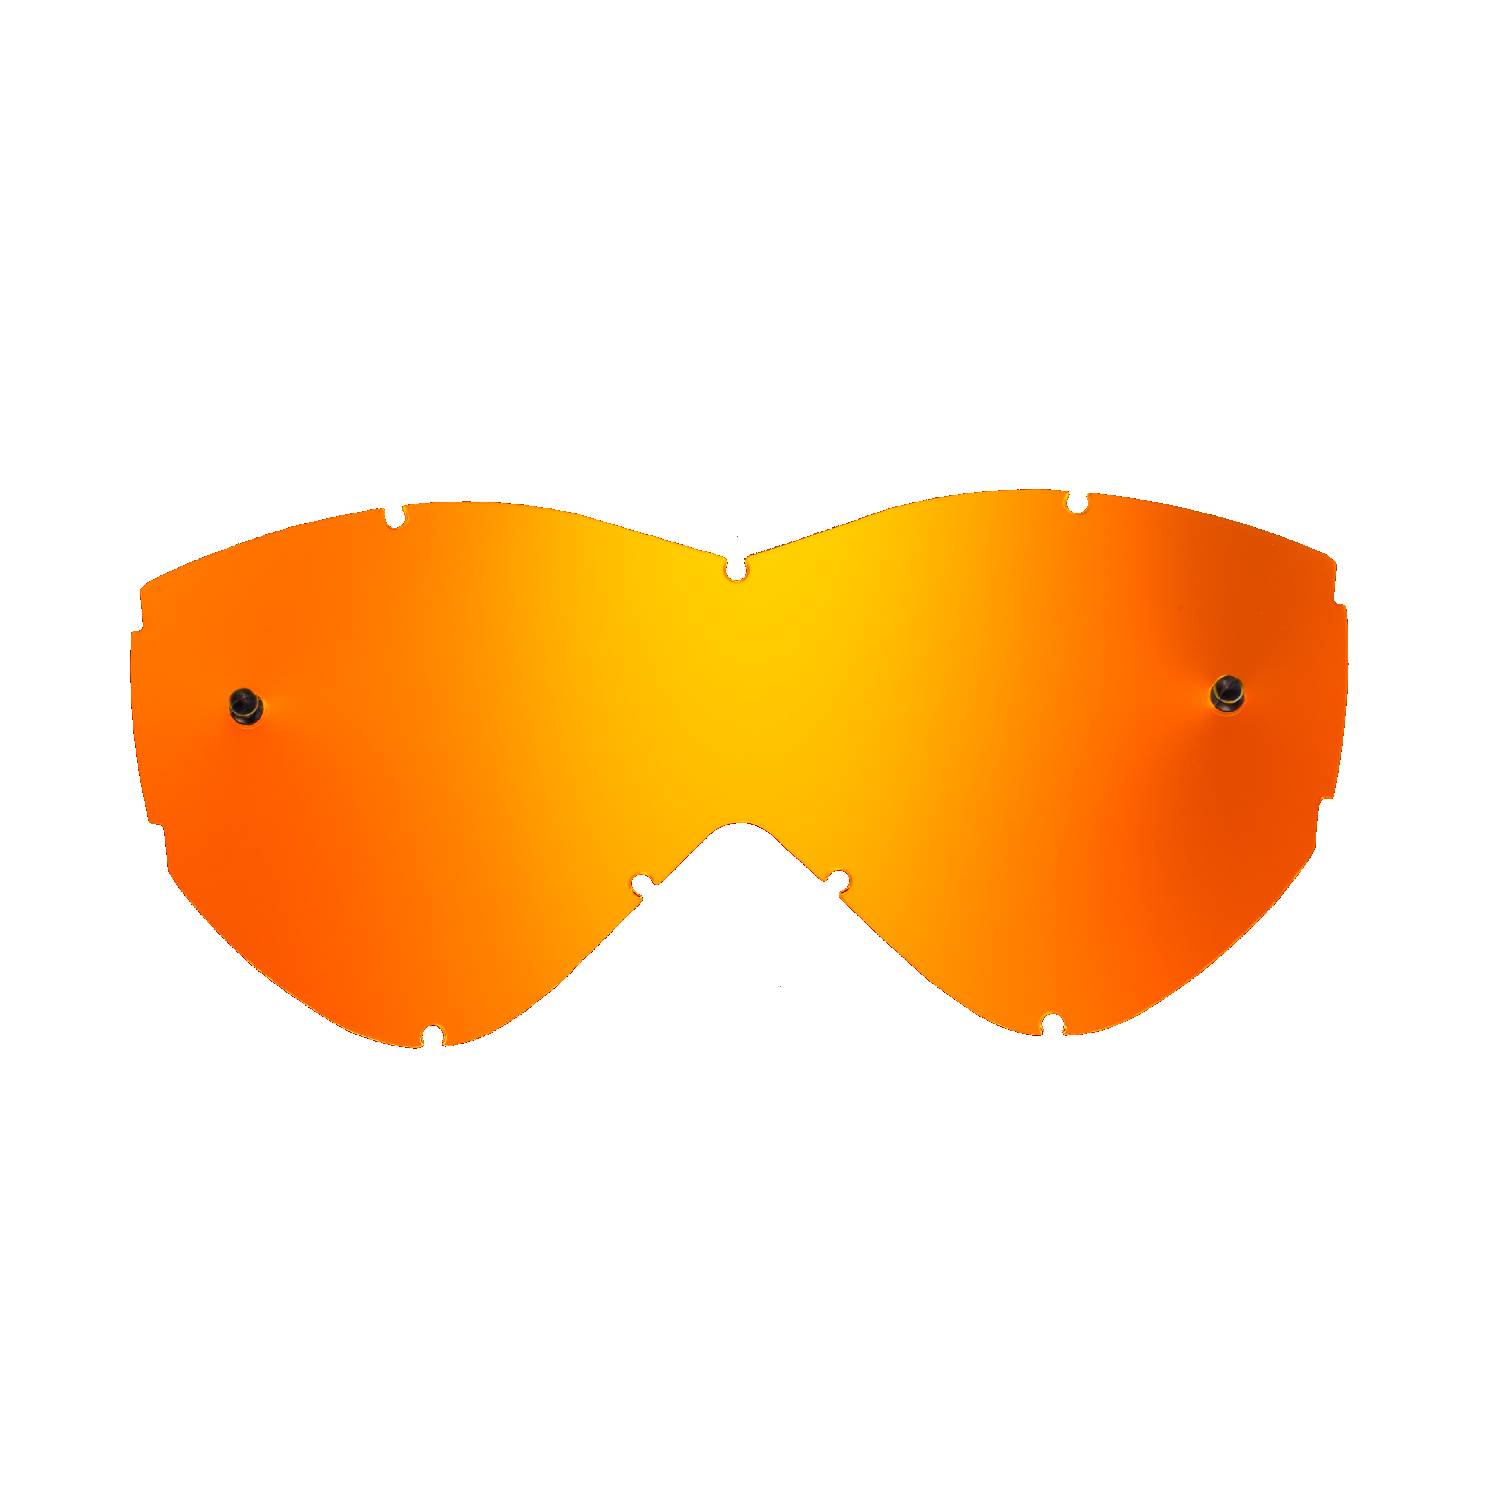 Lente di ricambio arancio specchiato compatibile per occhiale/maschera Smith Warp